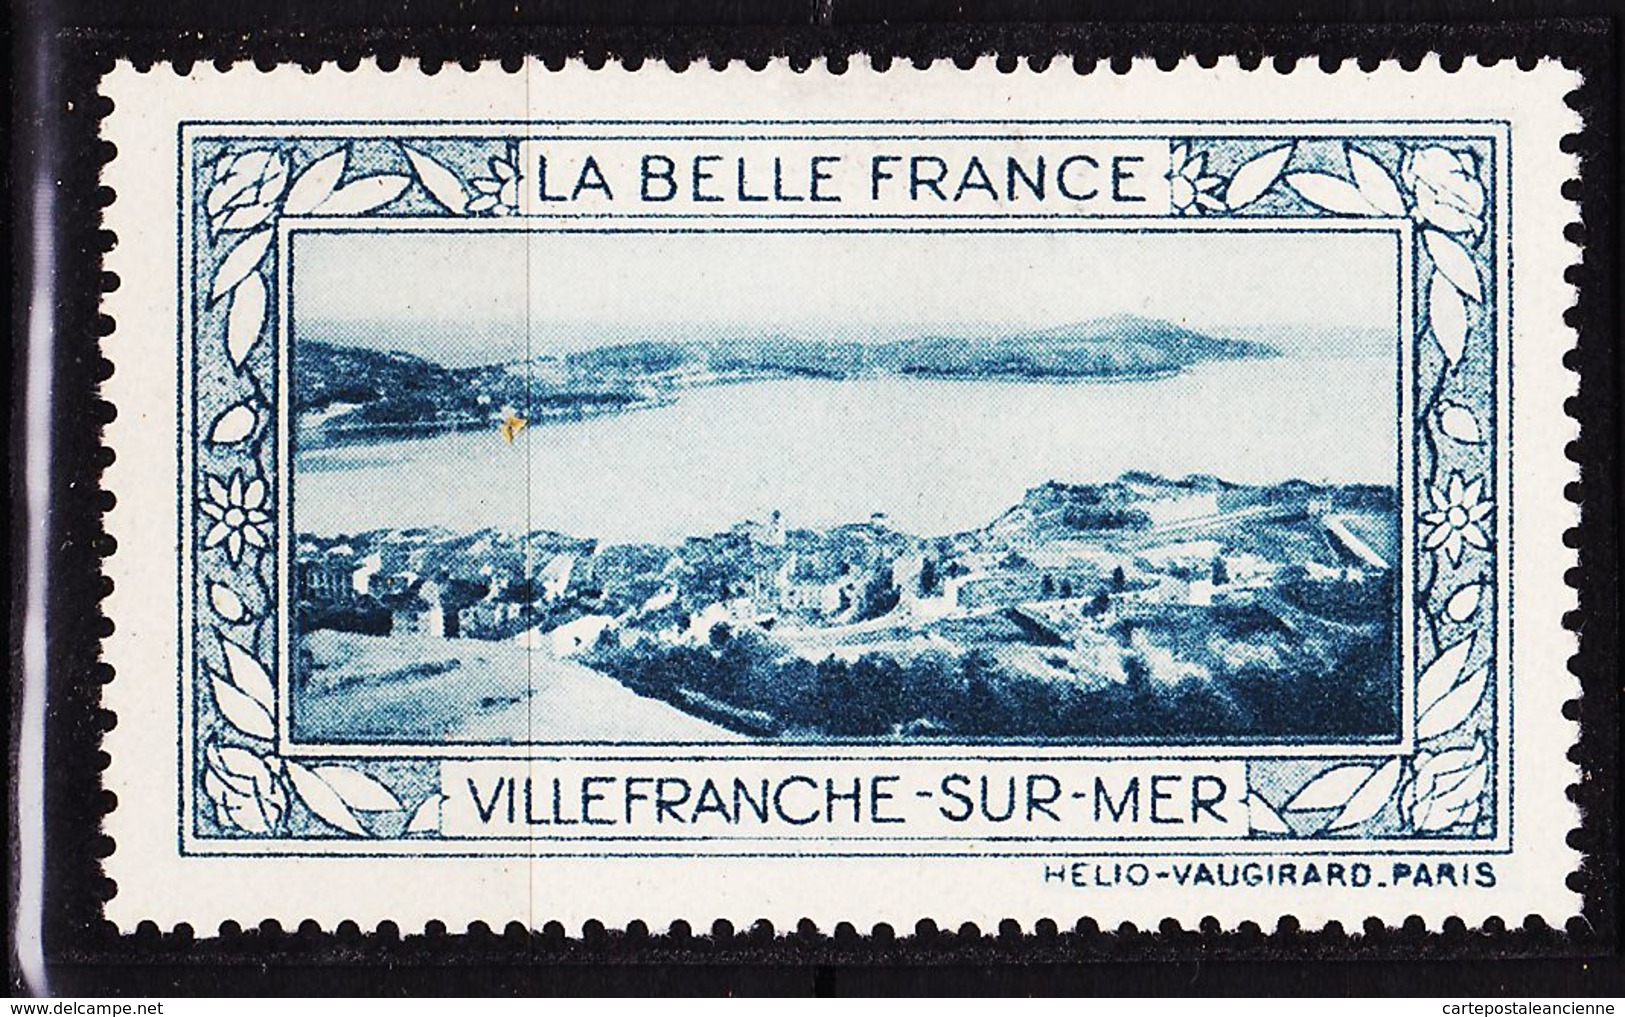 VIGN83 VILLEFRANCHE -SUR-MER Vignette De Collection LA BELLE FRANCE 1925s Helio VAUGIRARD PARIS Erinnophilie - Turismo (Vignette)